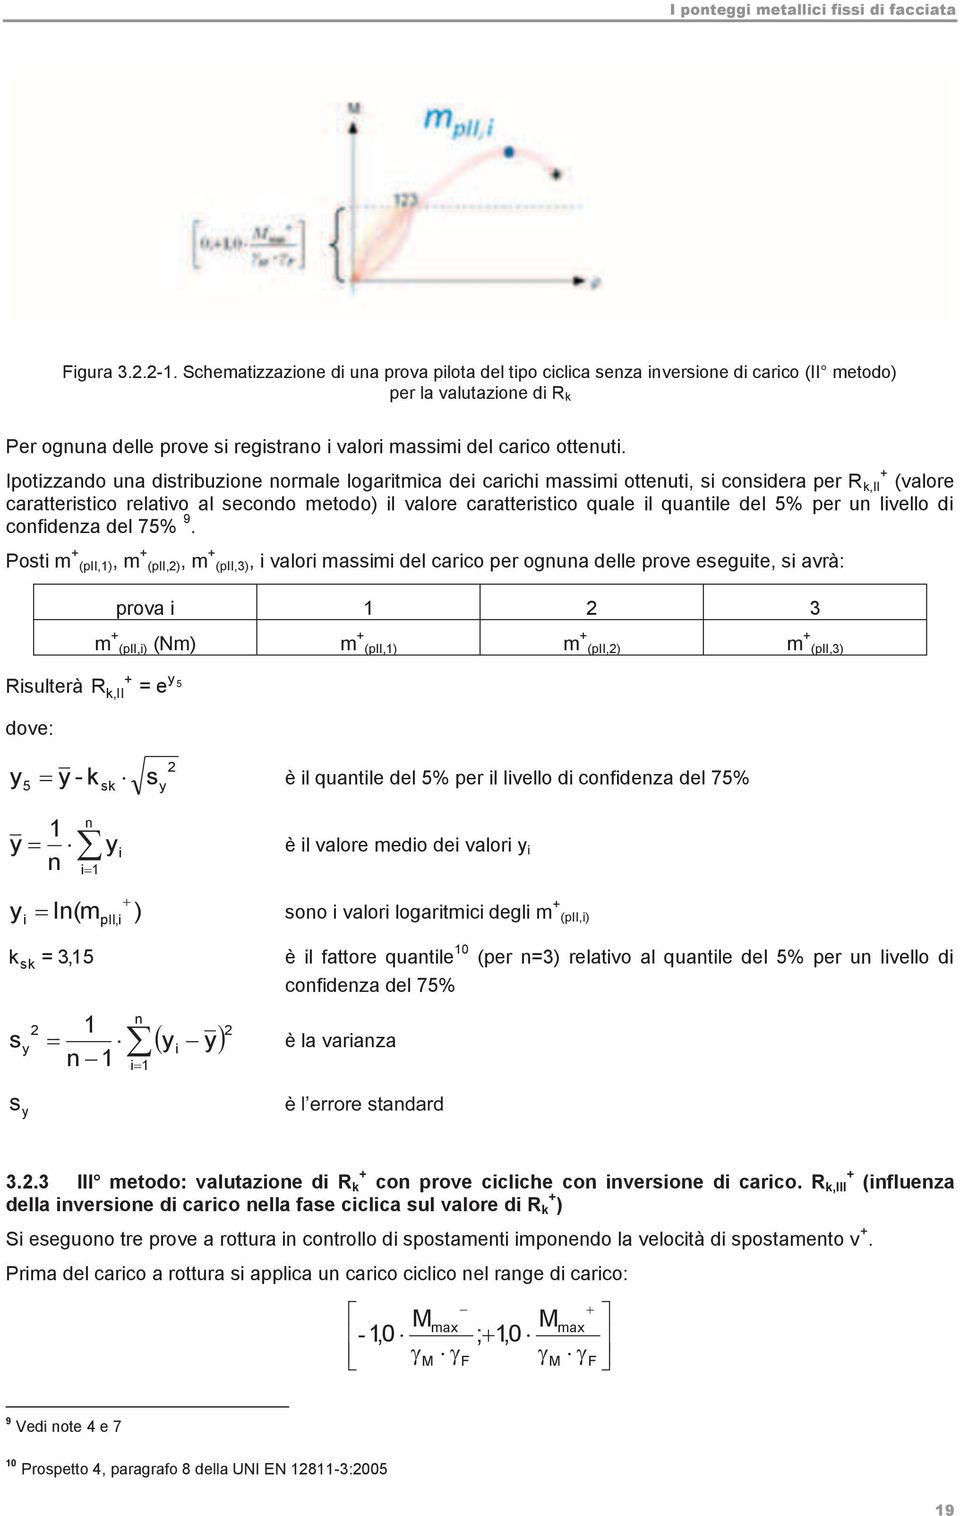 Ipotizzando una distribuzione normale logaritmica dei carichi massimi ottenuti, si considera per R + k,ii (valore caratteristico relativo al secondo metodo) il valore caratteristico quale il quantile